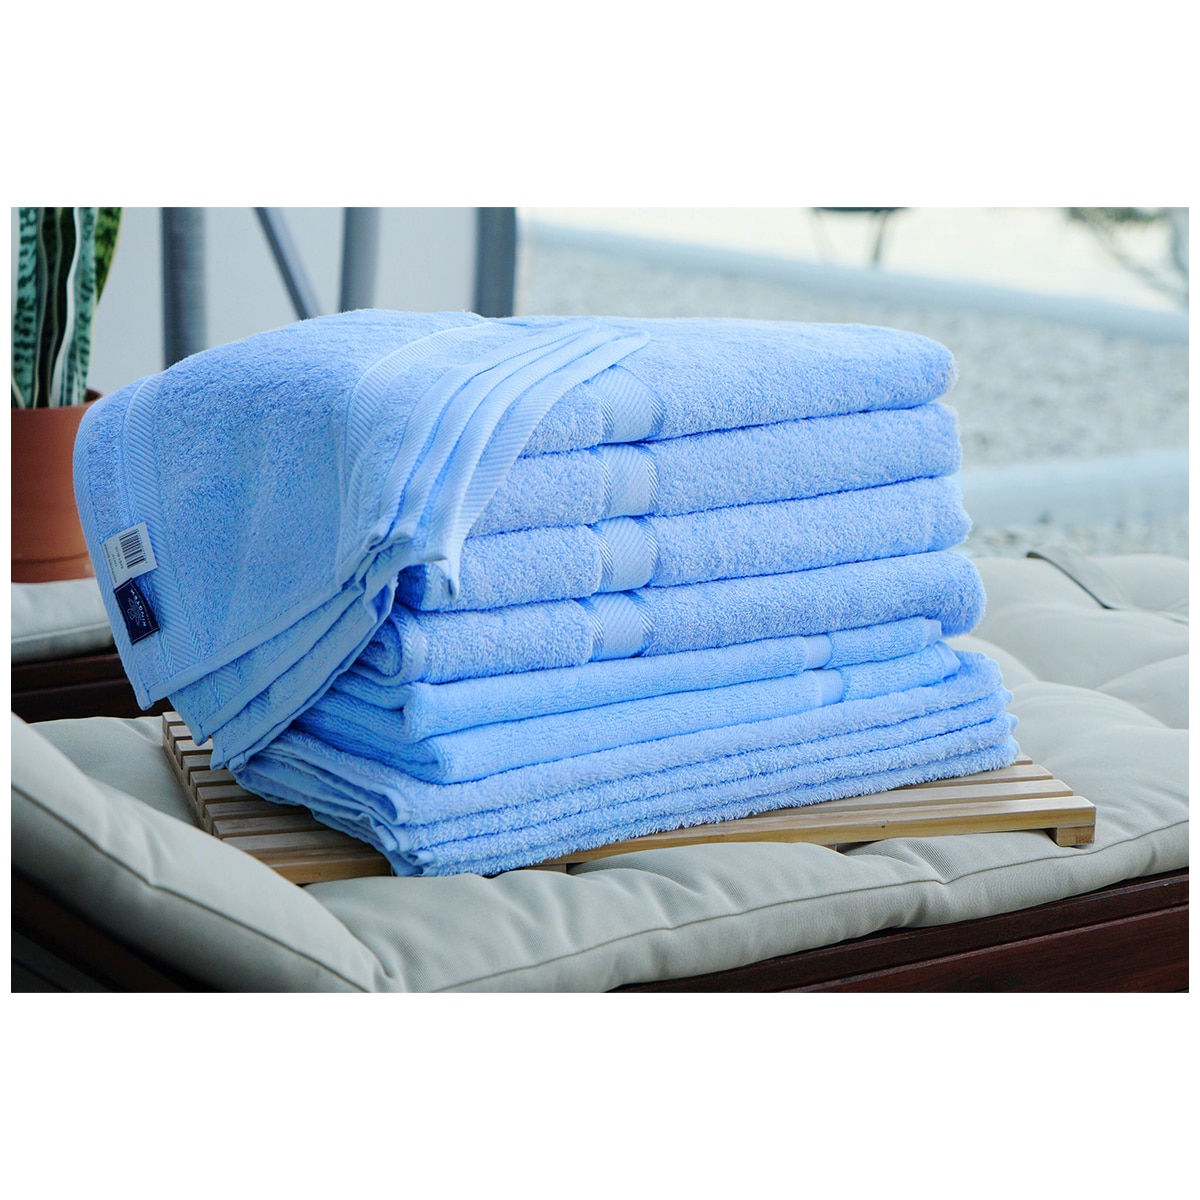 Kingtex Plain dyed 100% Combed Cotton towel range 550gsm Bath Sheet set 14 piece - Mid Blue